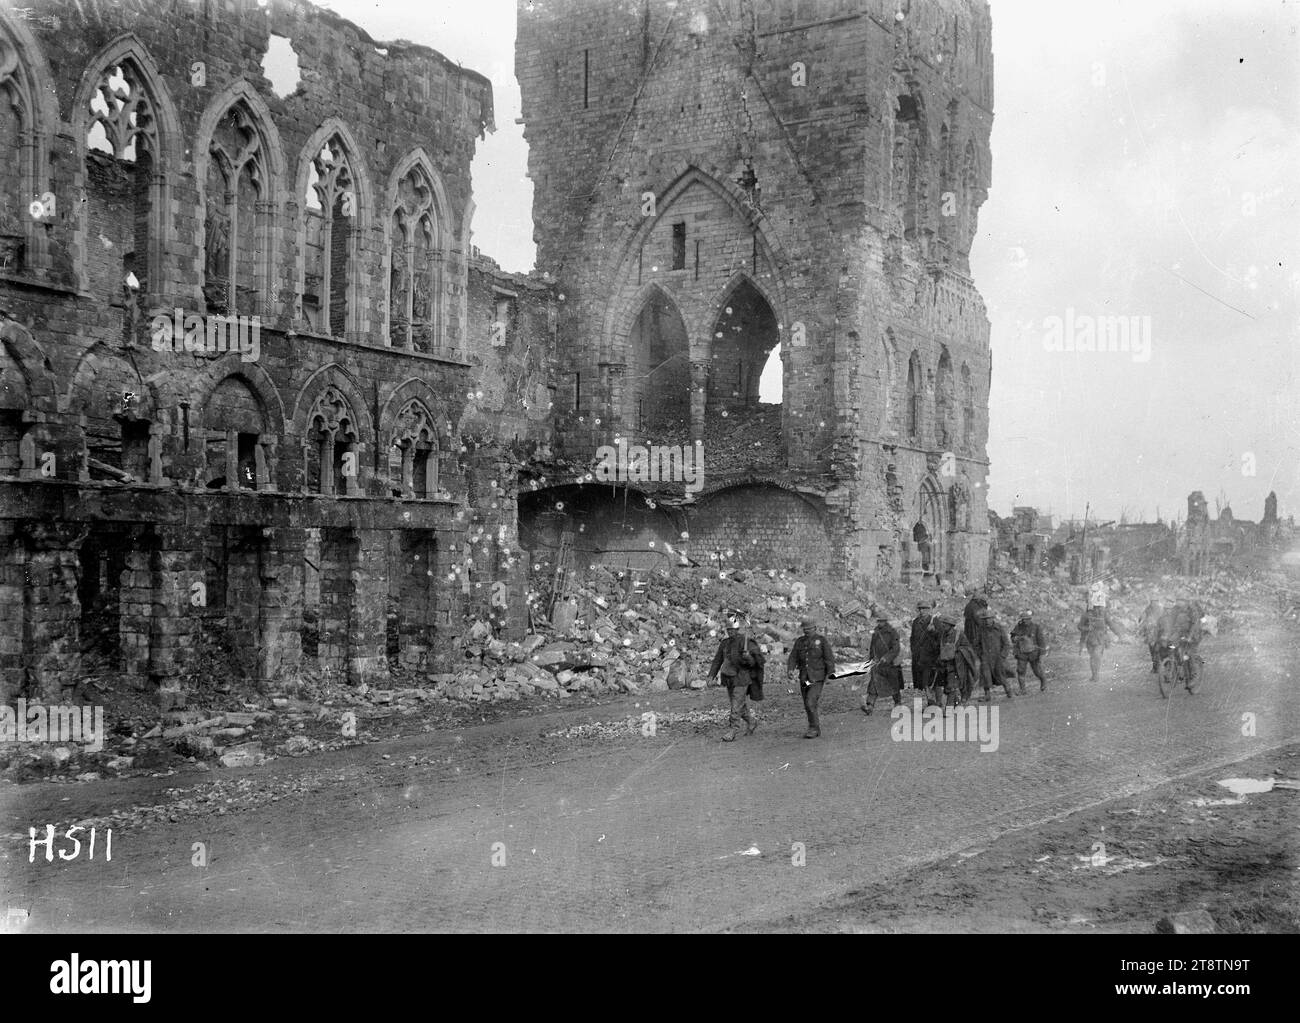 Neuseeländische Soldaten passieren die Ruinen der Tuchhalle in Ypern, Belgien, neuseeländische Soldaten passieren die Ruinen der Tuchhalle in Ypern, Belgien, 4. Oktober 1917 Stockfoto